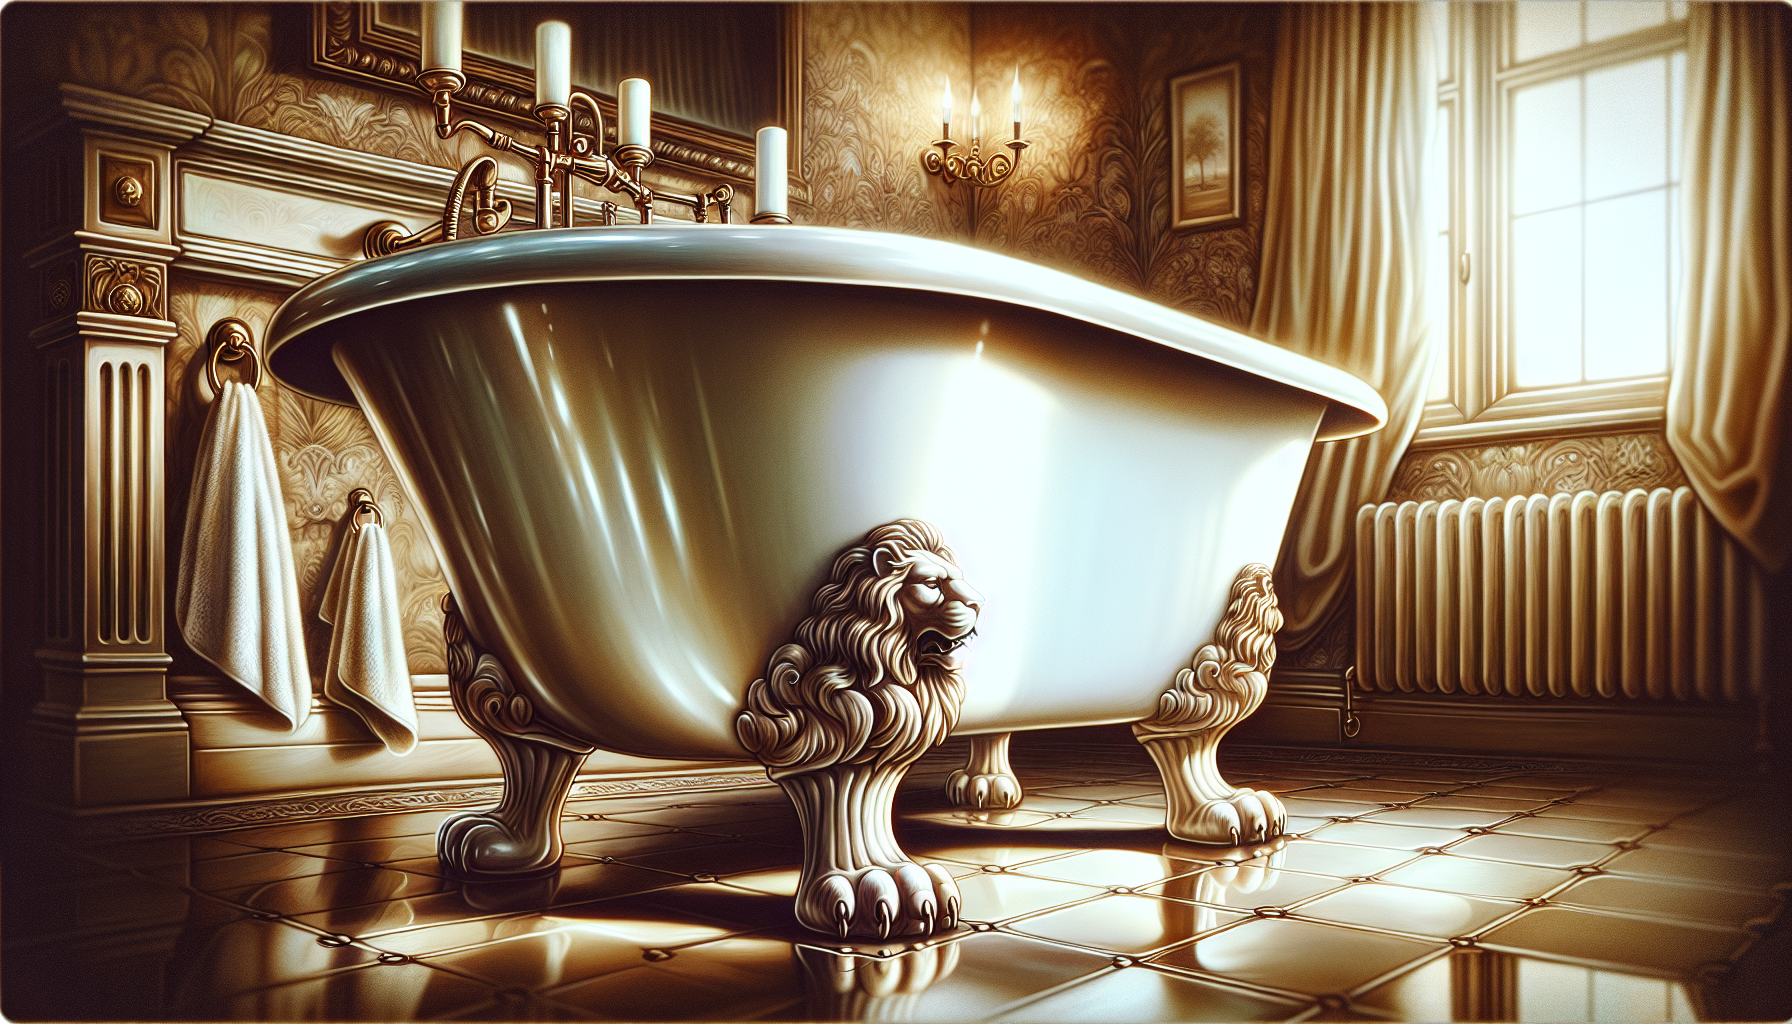 Eine Illustration einer eleganten Retro-Badewanne mit Löwenfüßen